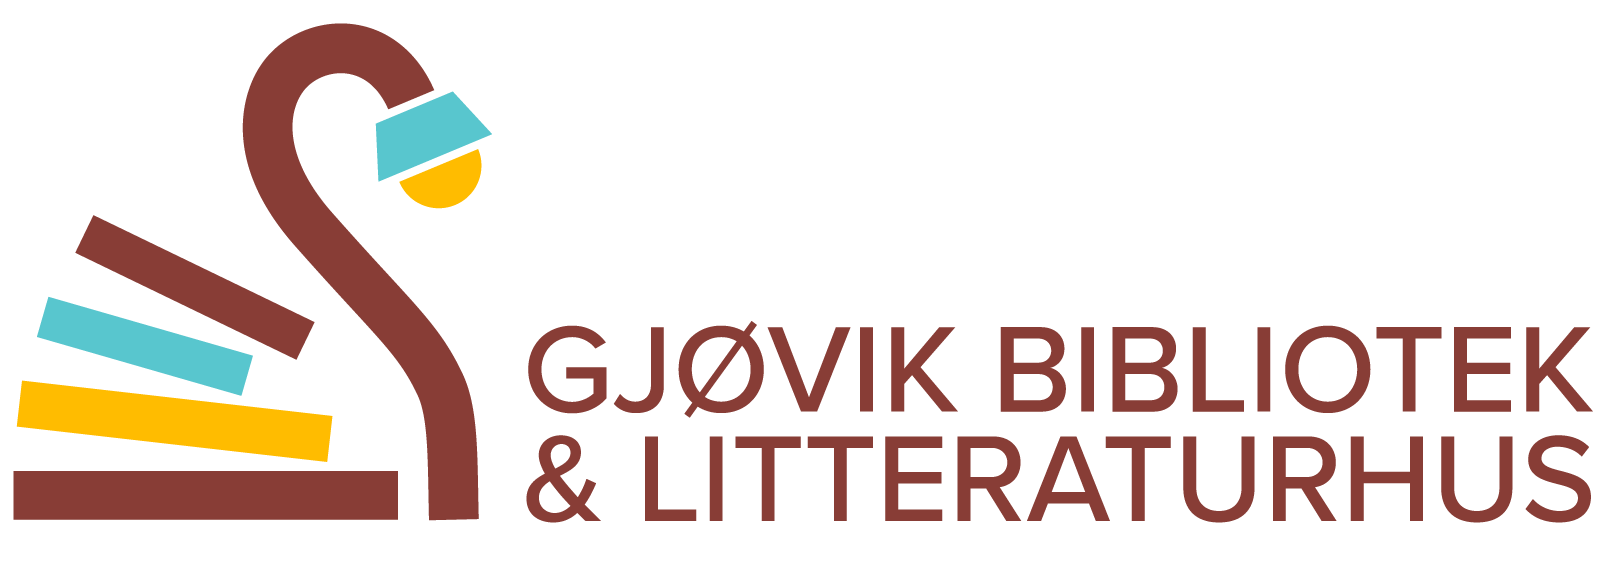 Gjøvik bibliotek og litteraturhus